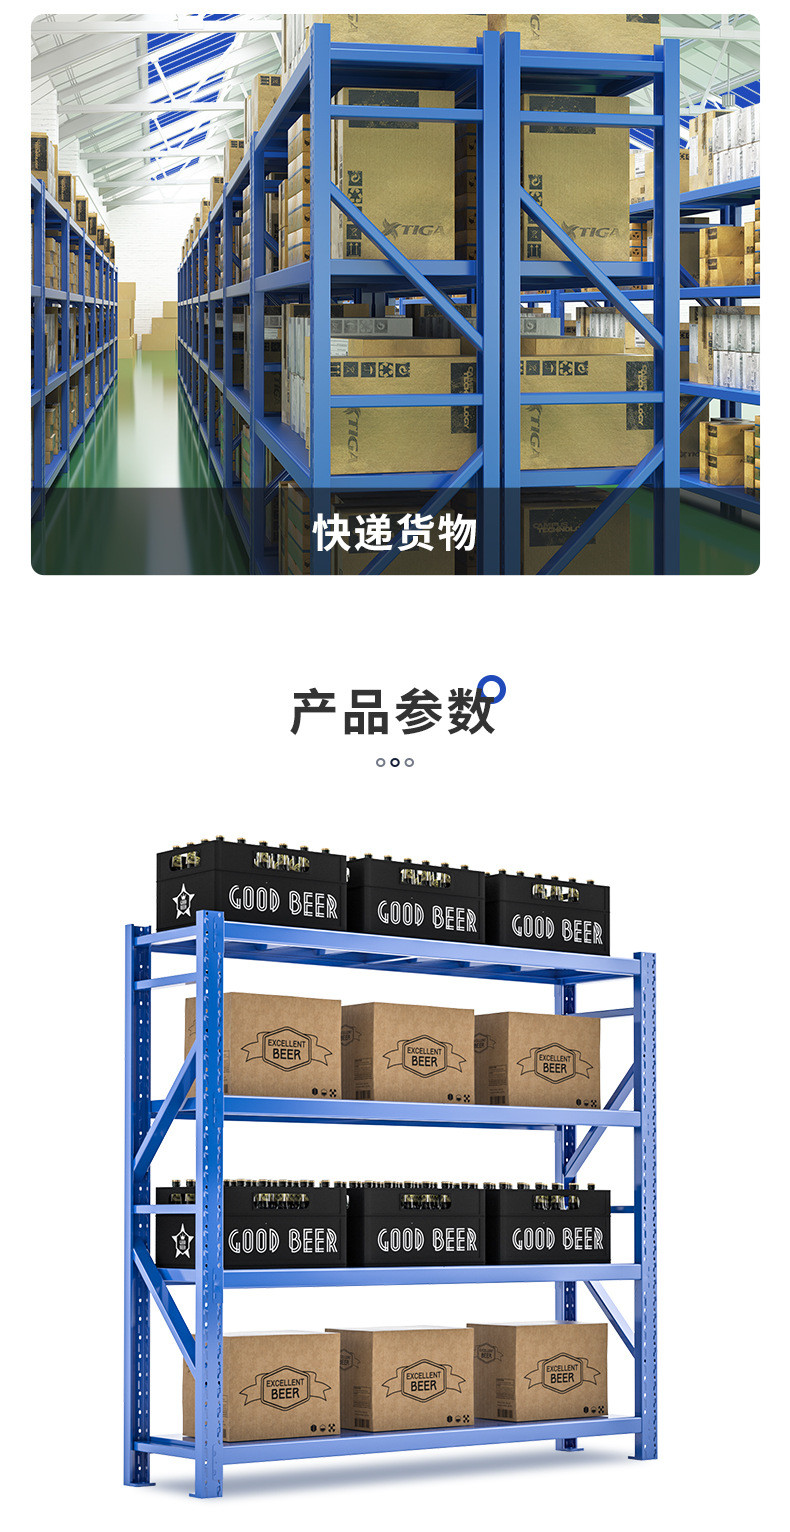 中仓仓储货架  同诺货架供应  南京轻型仓储货架子示例图12